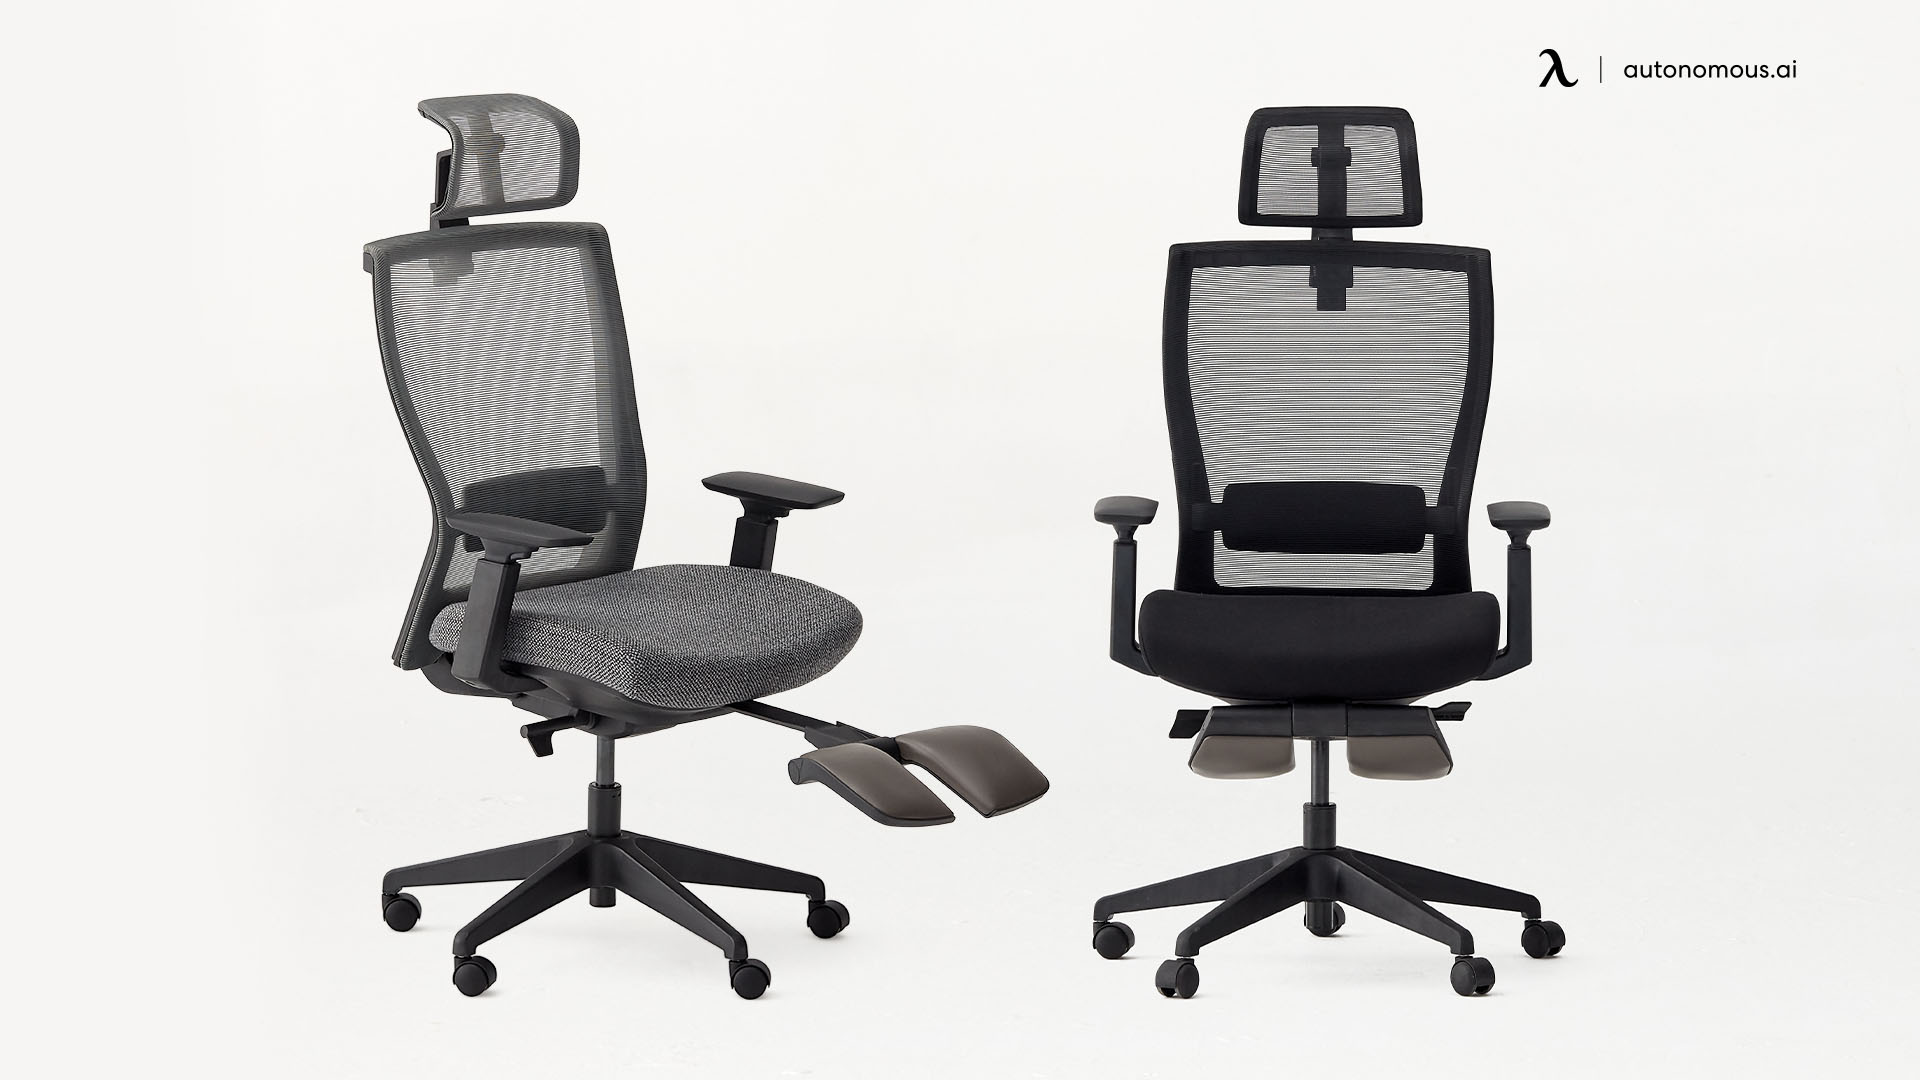 ErgoChair Recline elegant office chair